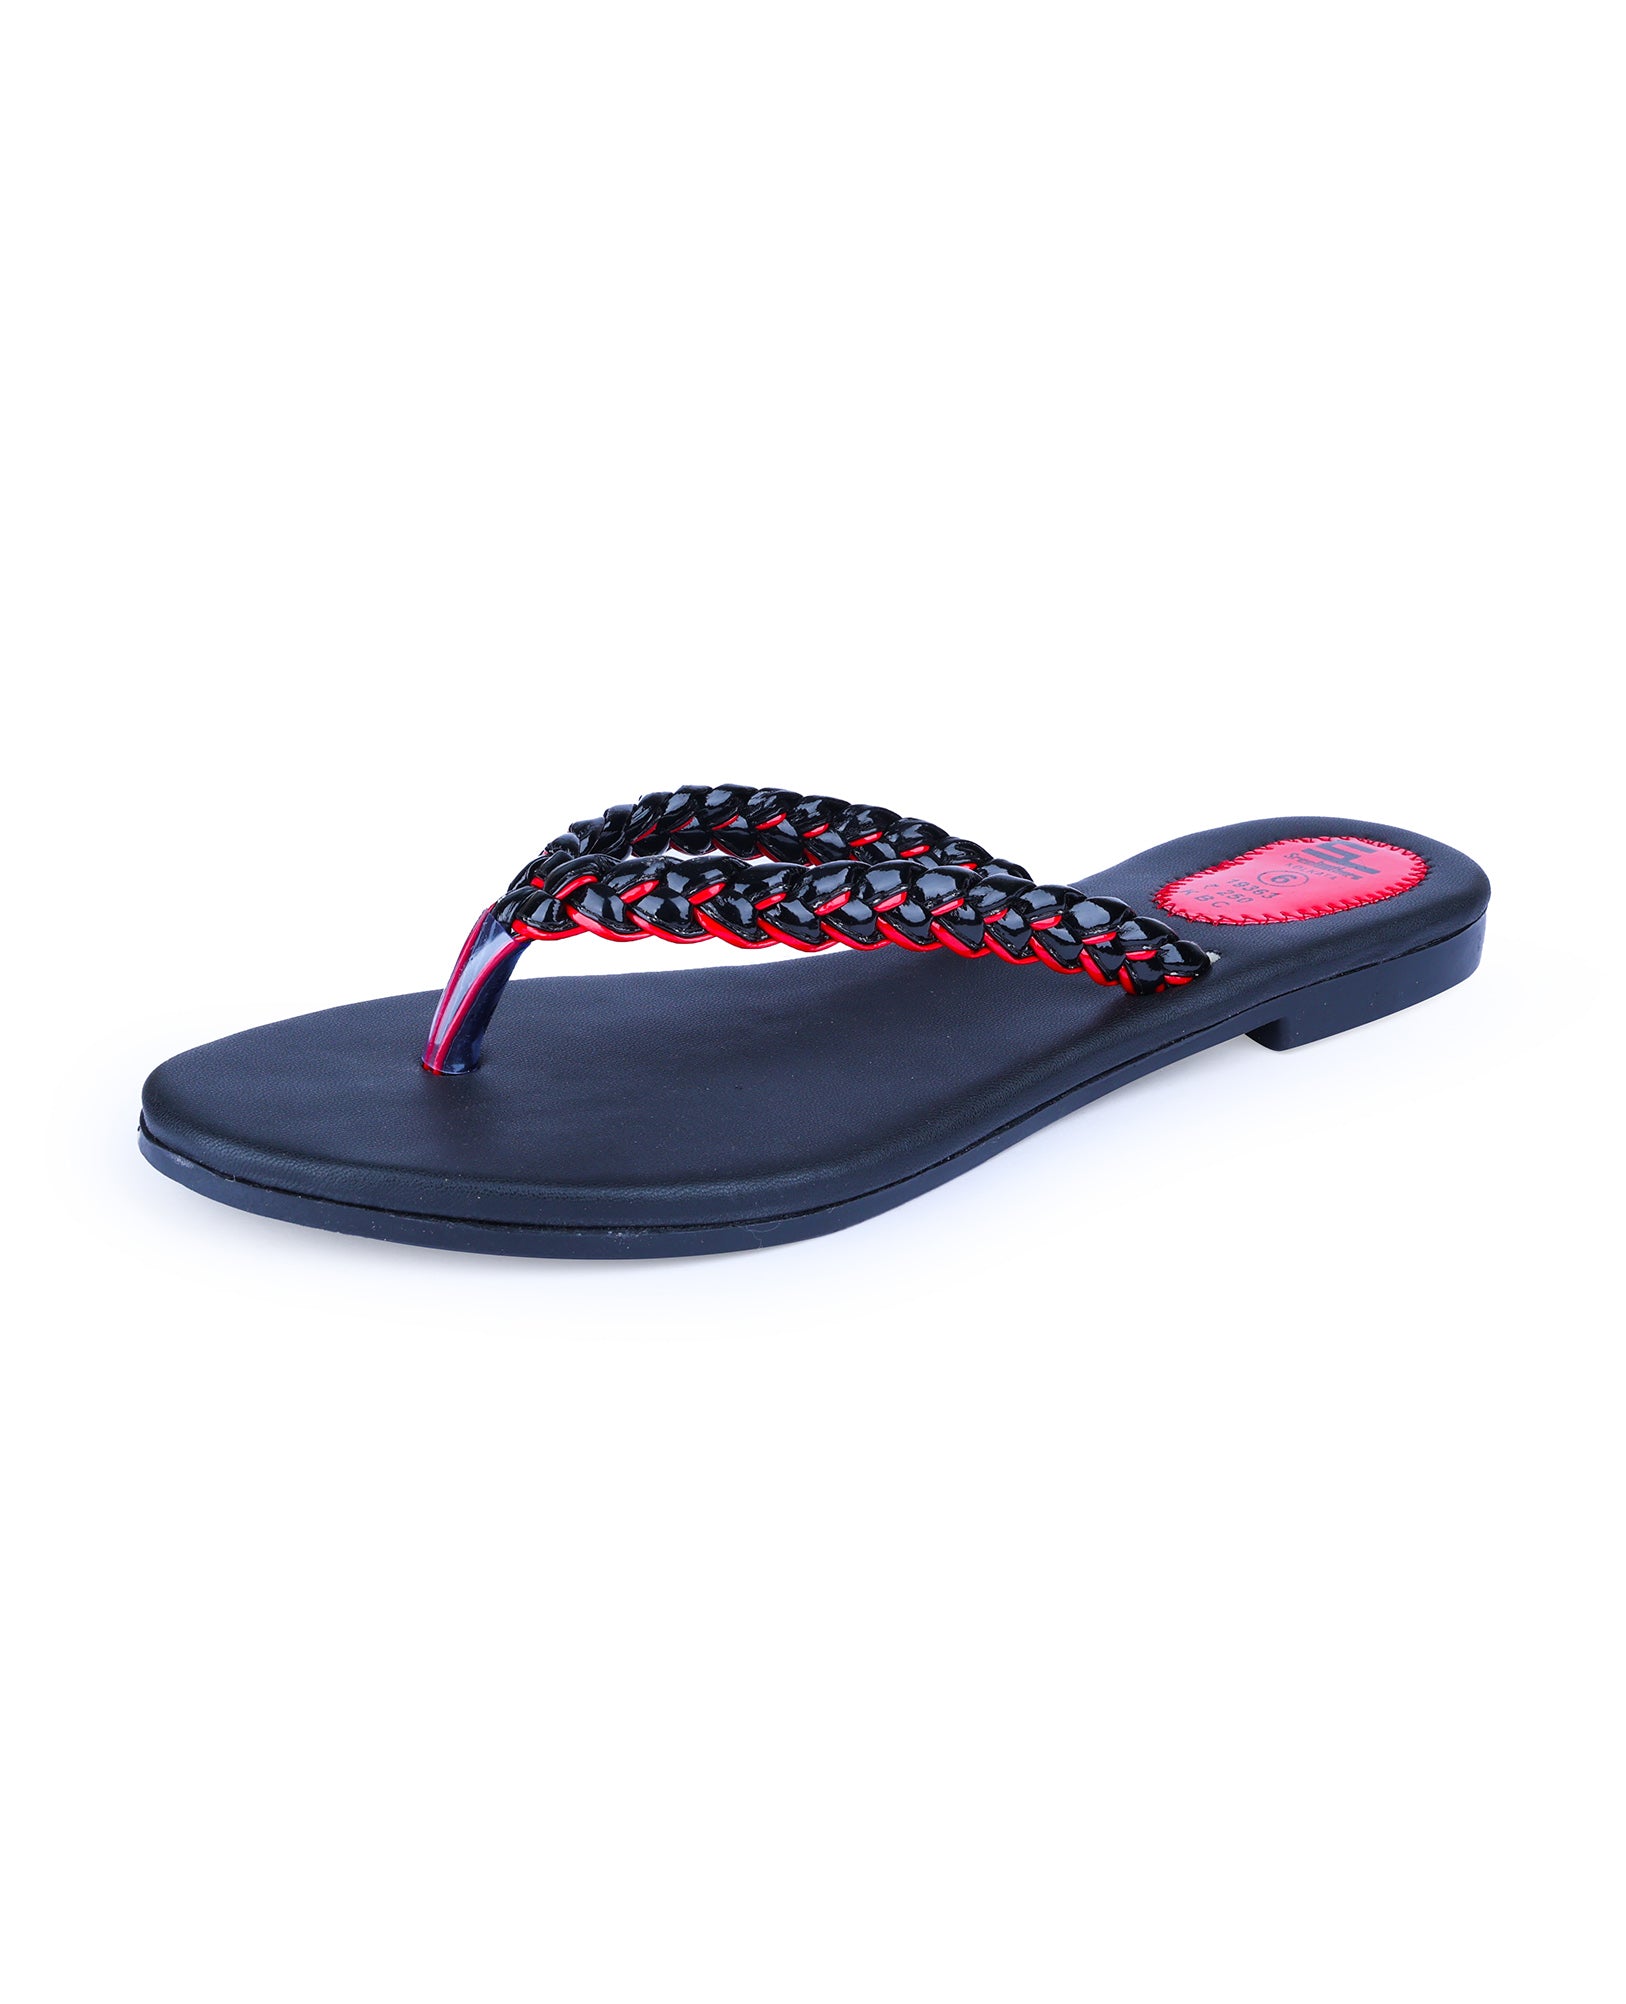 Women Slippers – Sreeleathers Ltd